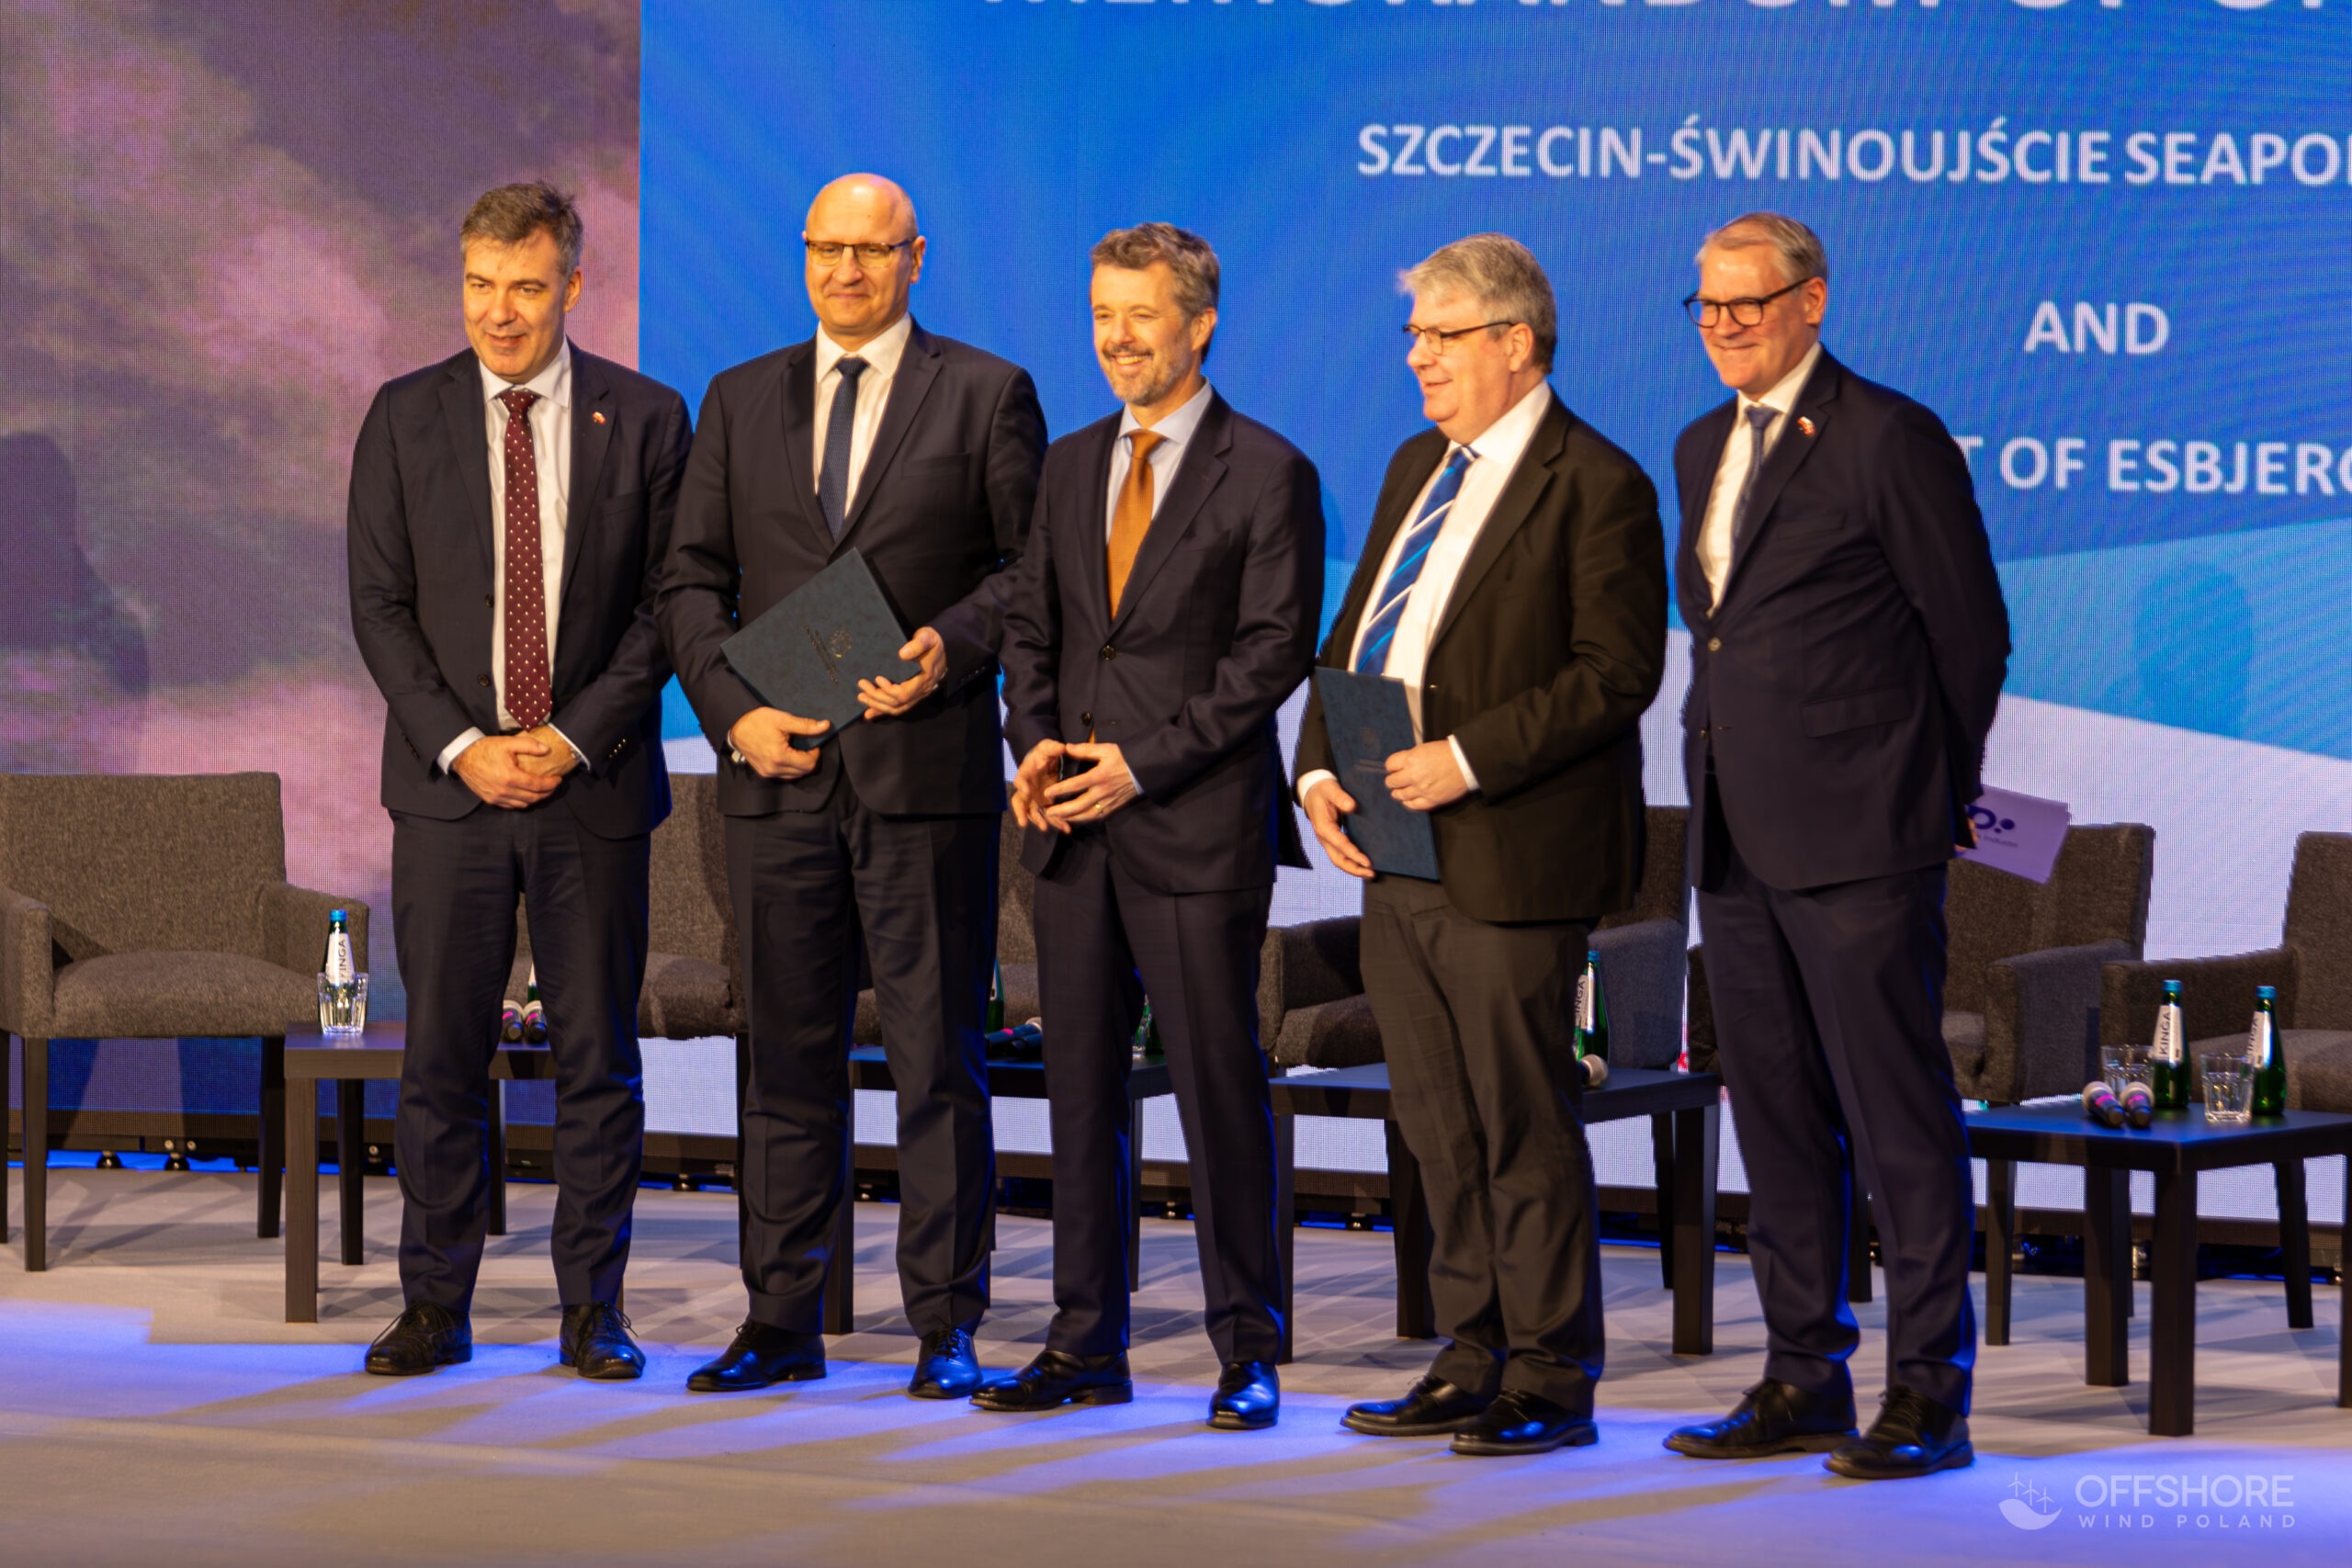 Podpisanie porozumienia pomiędzy portami Szczecin-Świnoujście a Esbjerg, fot. OffshoreWindPoland.pl